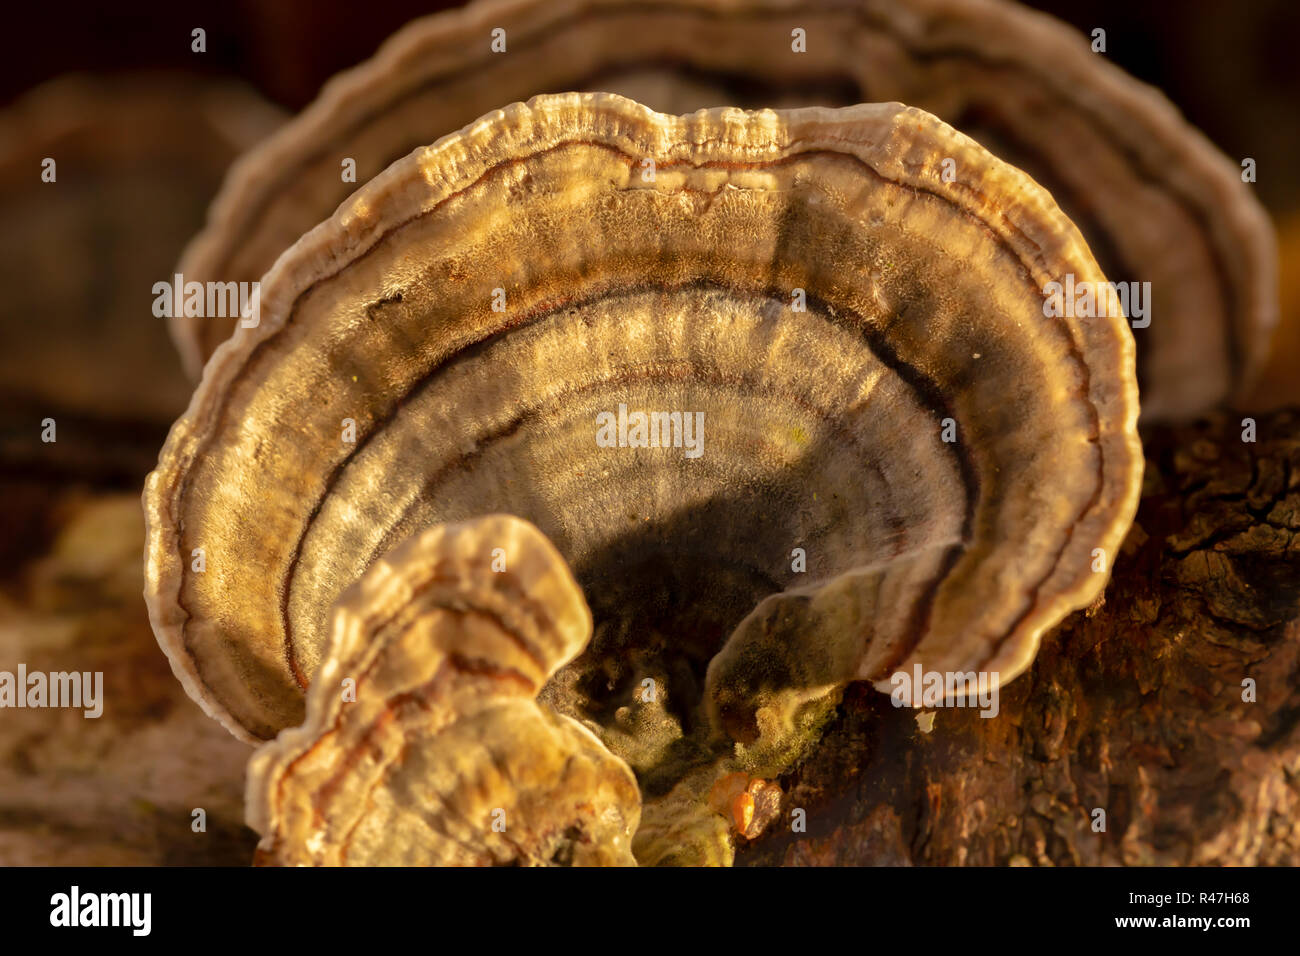 Macro photograph of Many-zoned bracket fungus. Stock Photo